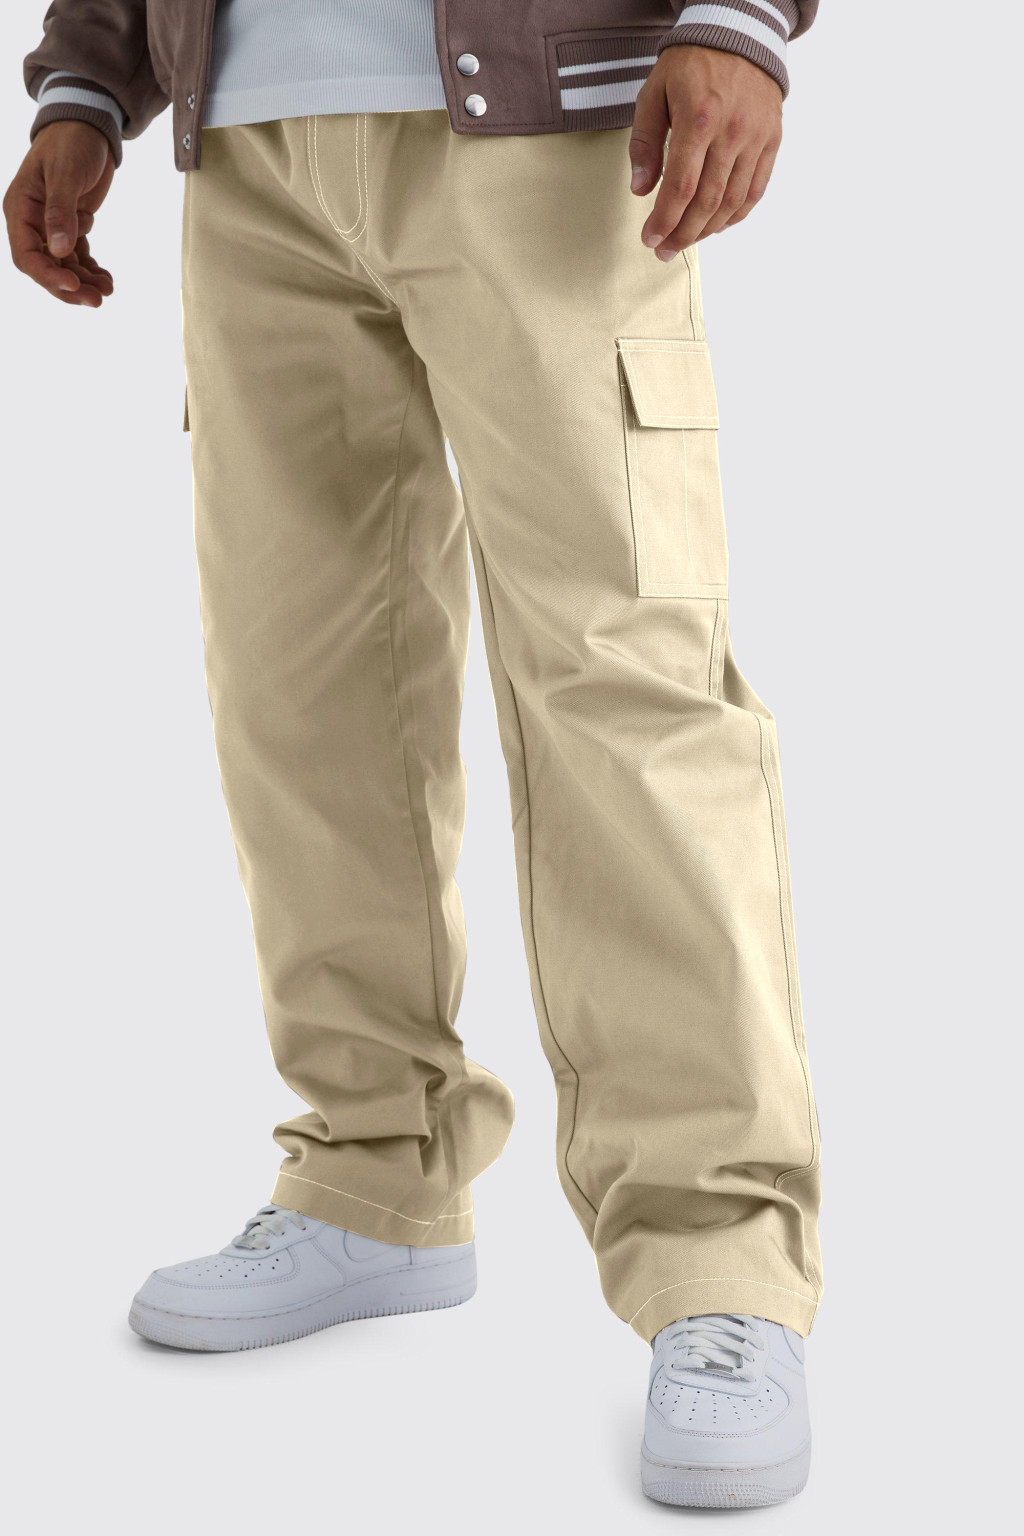 piaskowe spodnie bojówki kieszonki